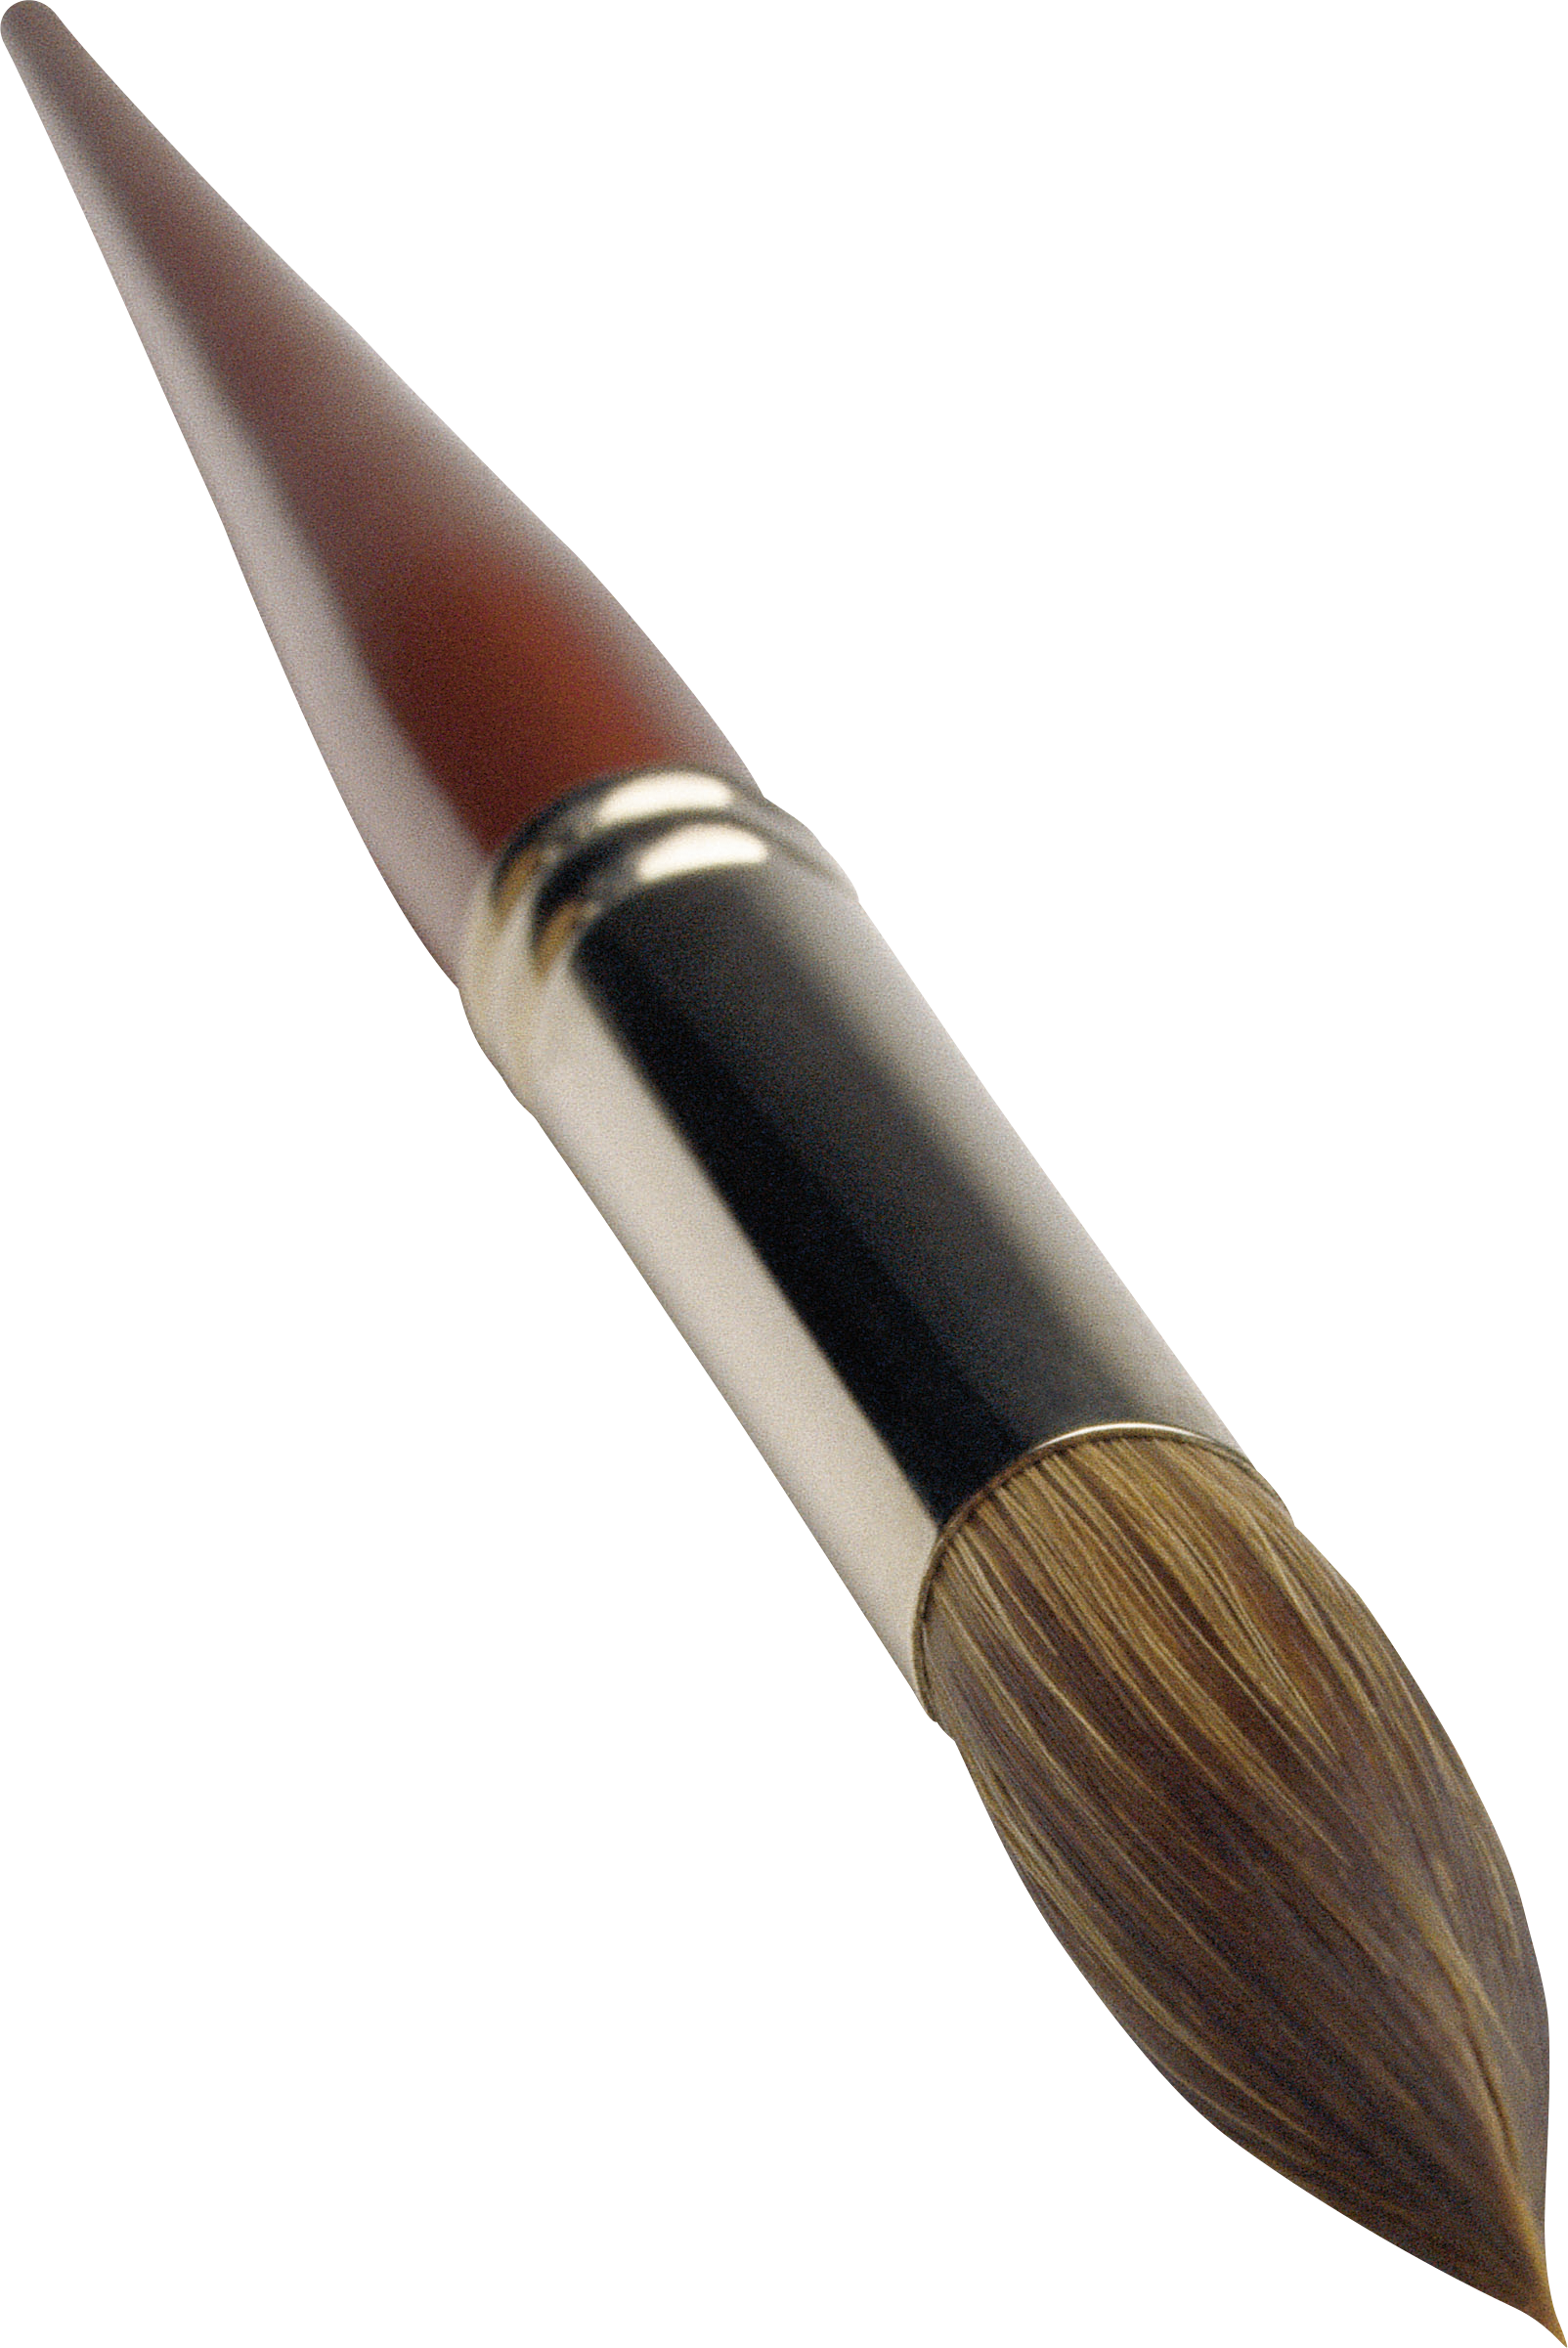 Makeup Brush PNG Image